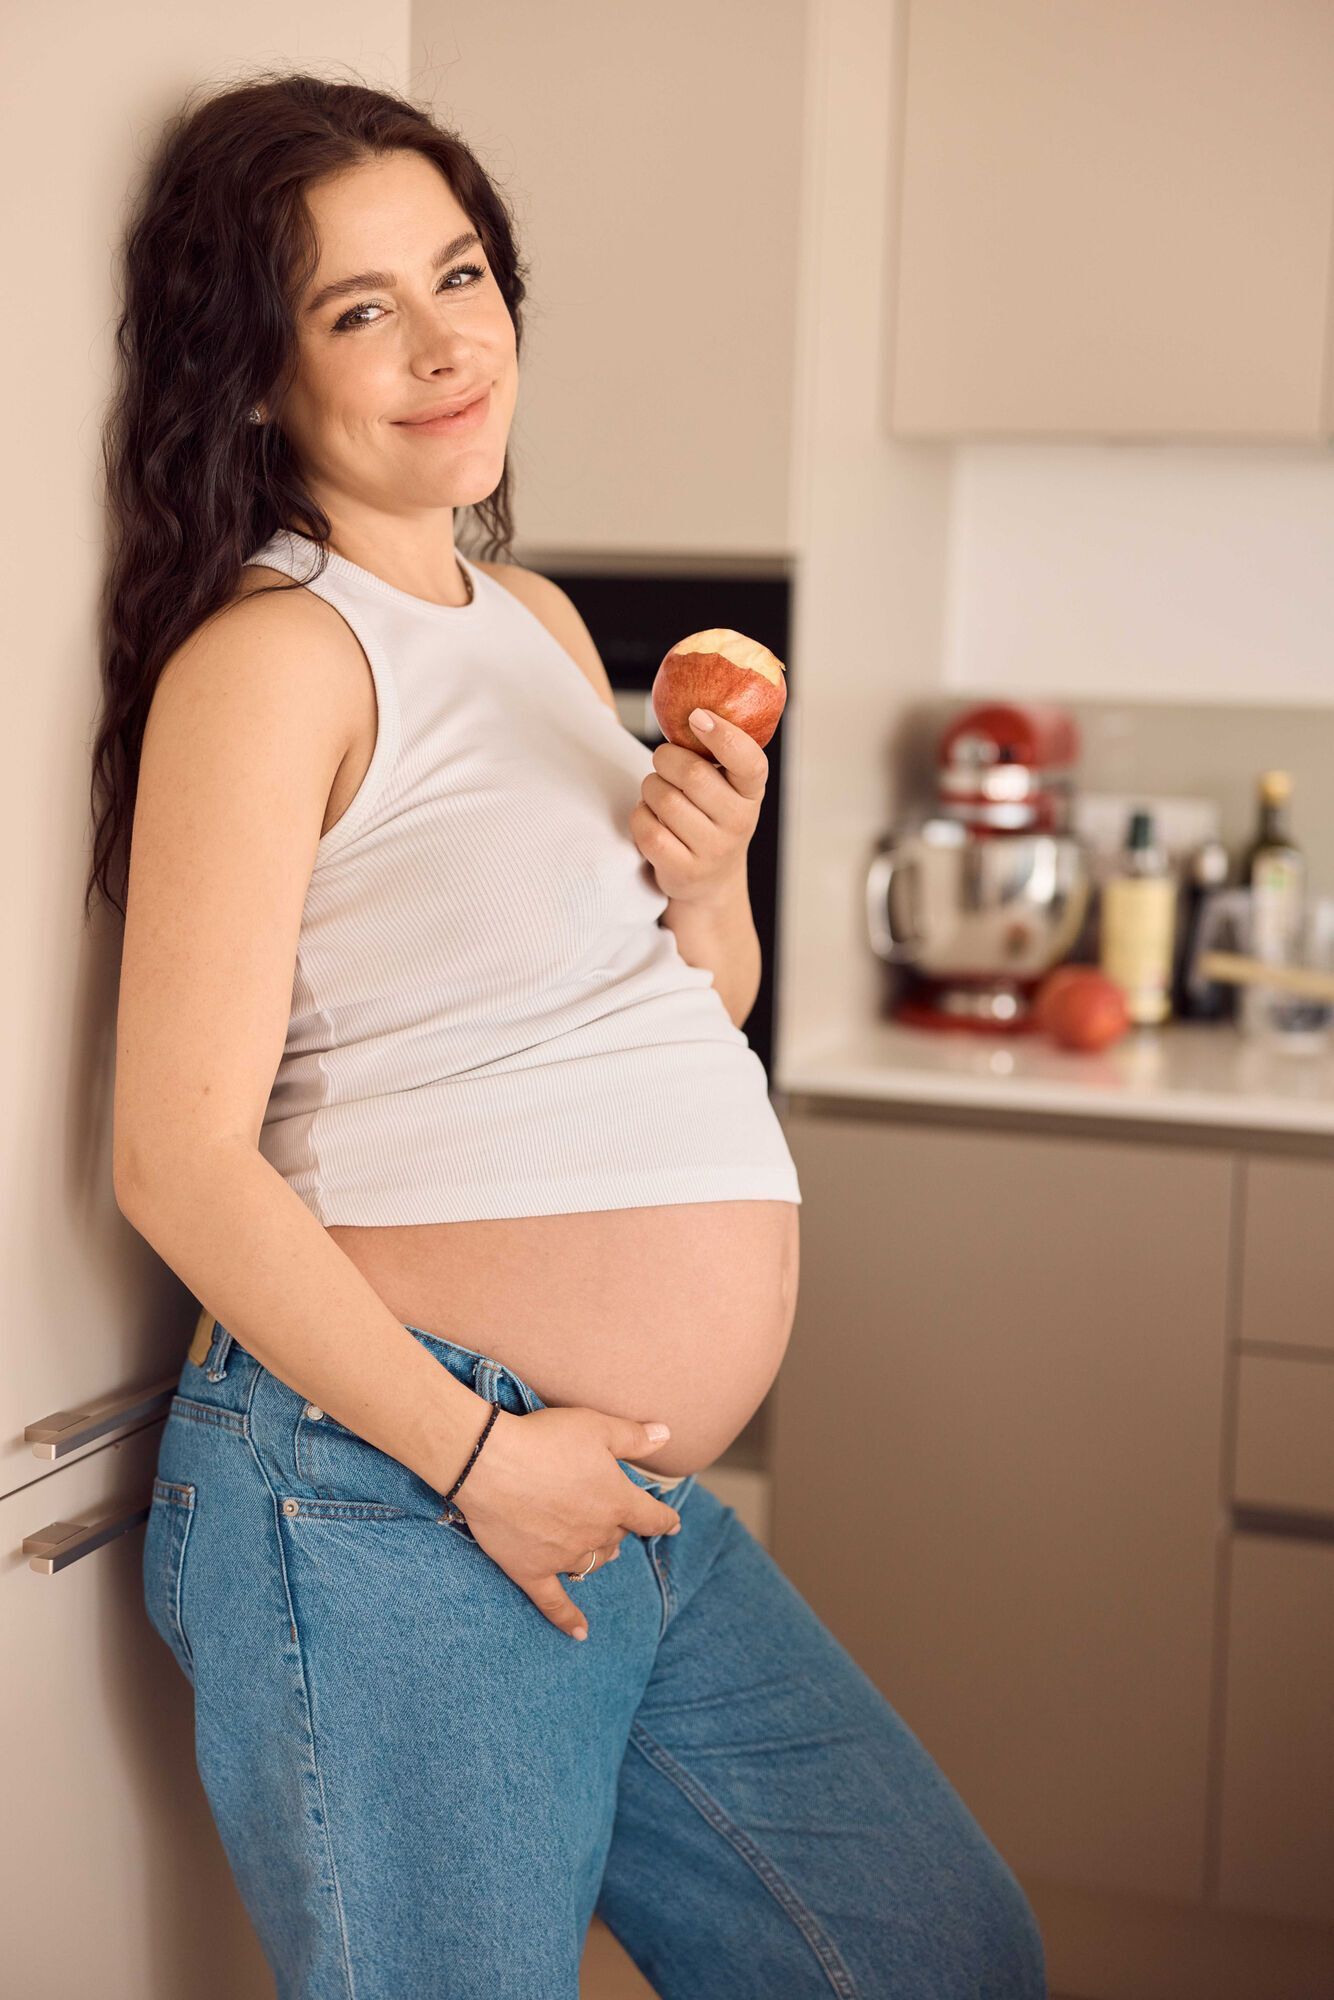 Іванна Онуфрійчук показала себе на останньому місяці вагітності та пояснила, чому не народжуватиме в Україні